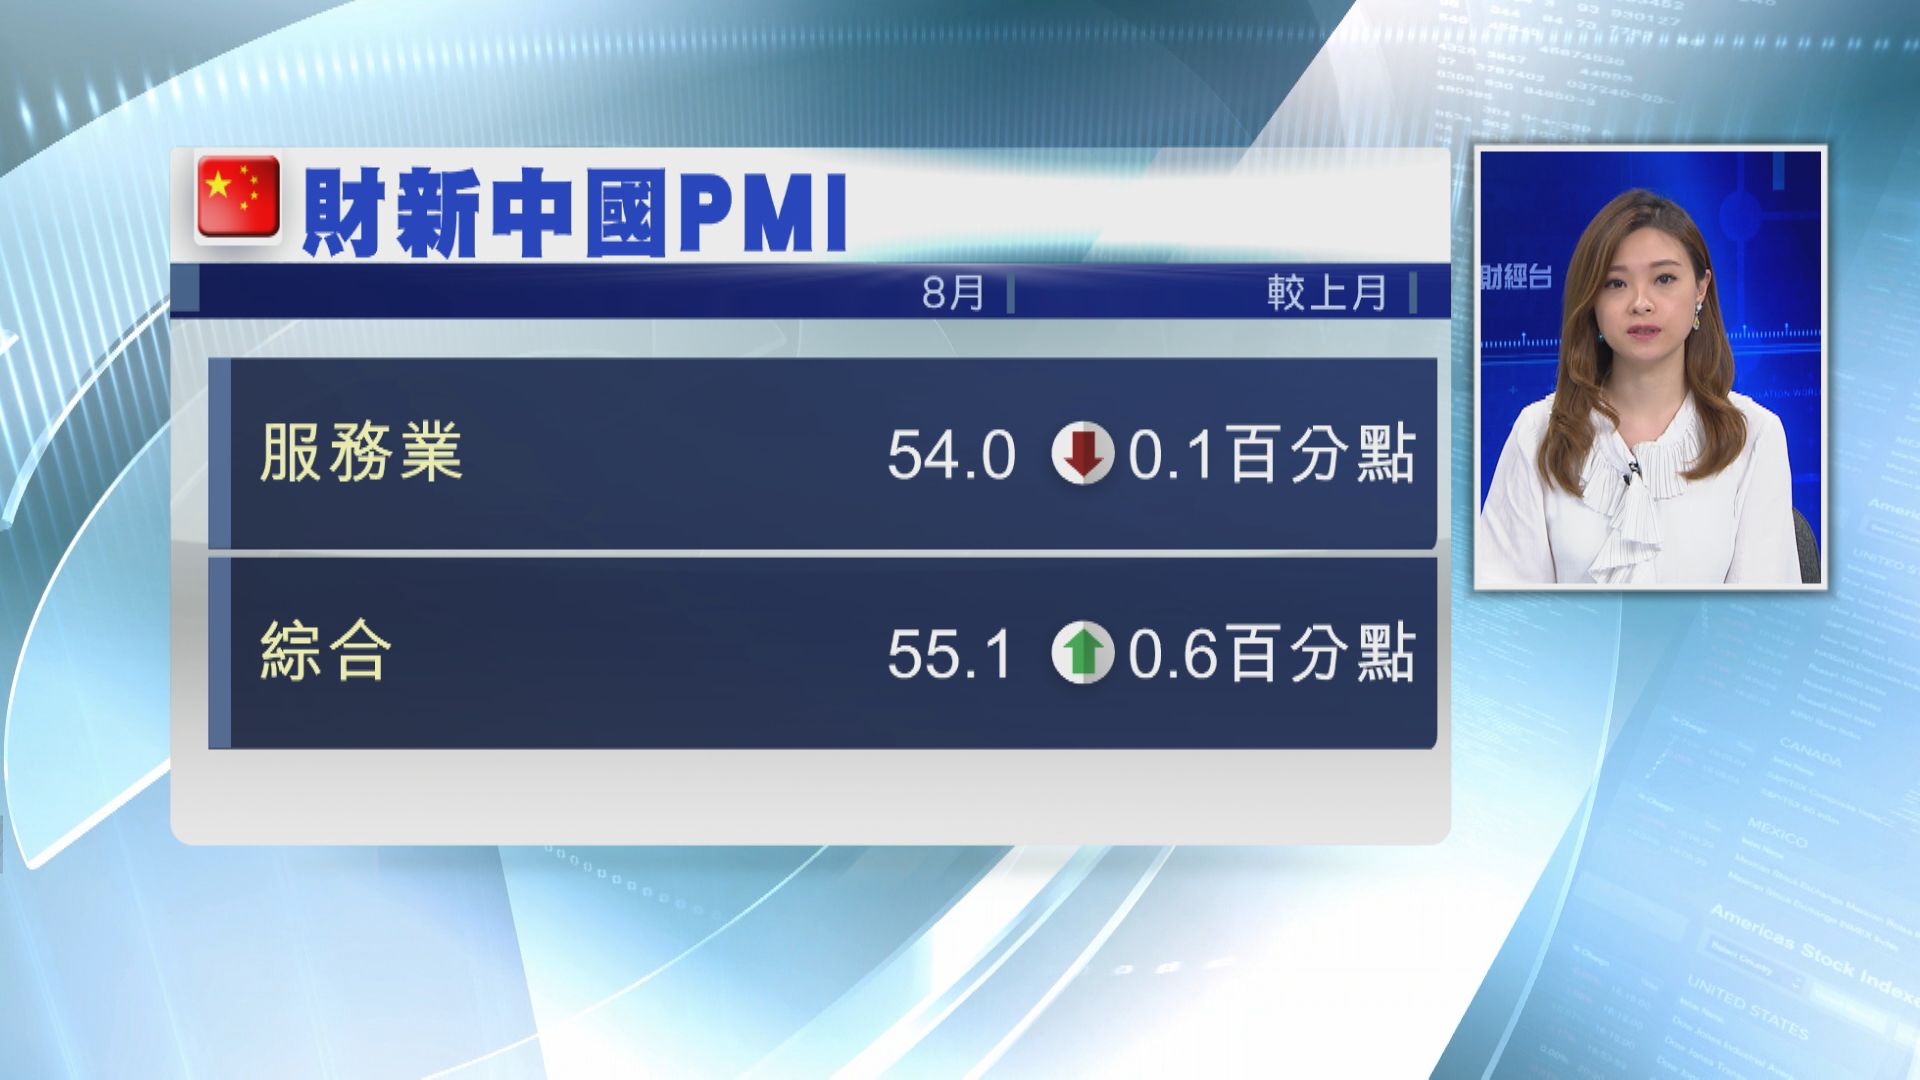 8月財新中國服務業PMI輕微回落 仍勝預期